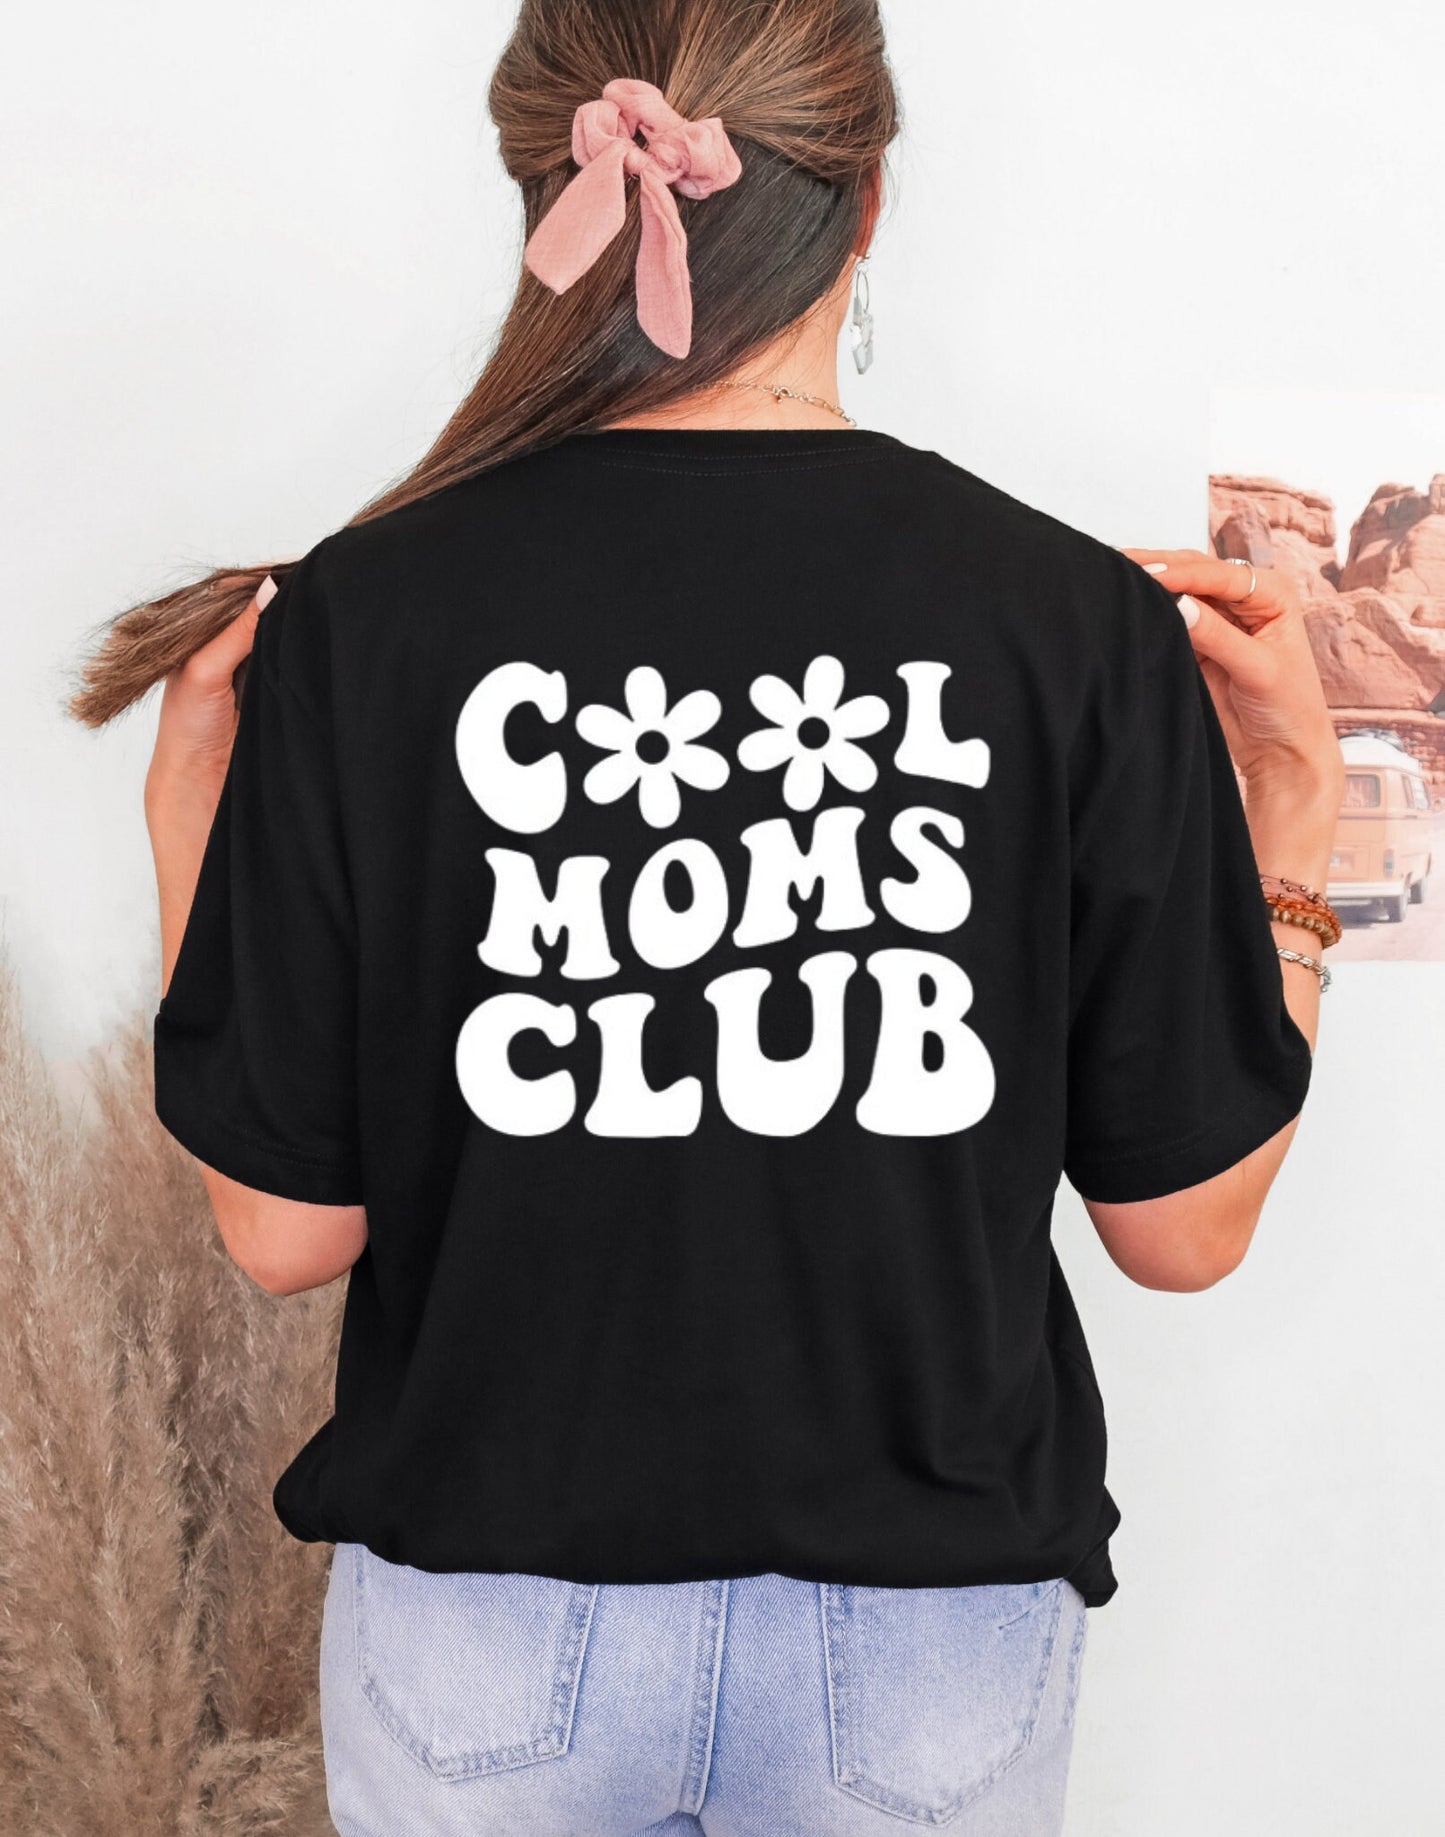 Tshirt women trendy, tshirt women, tshirt design, shirts for women, shirts for women trendy, gifts for women, cool moms club, shirts for mom